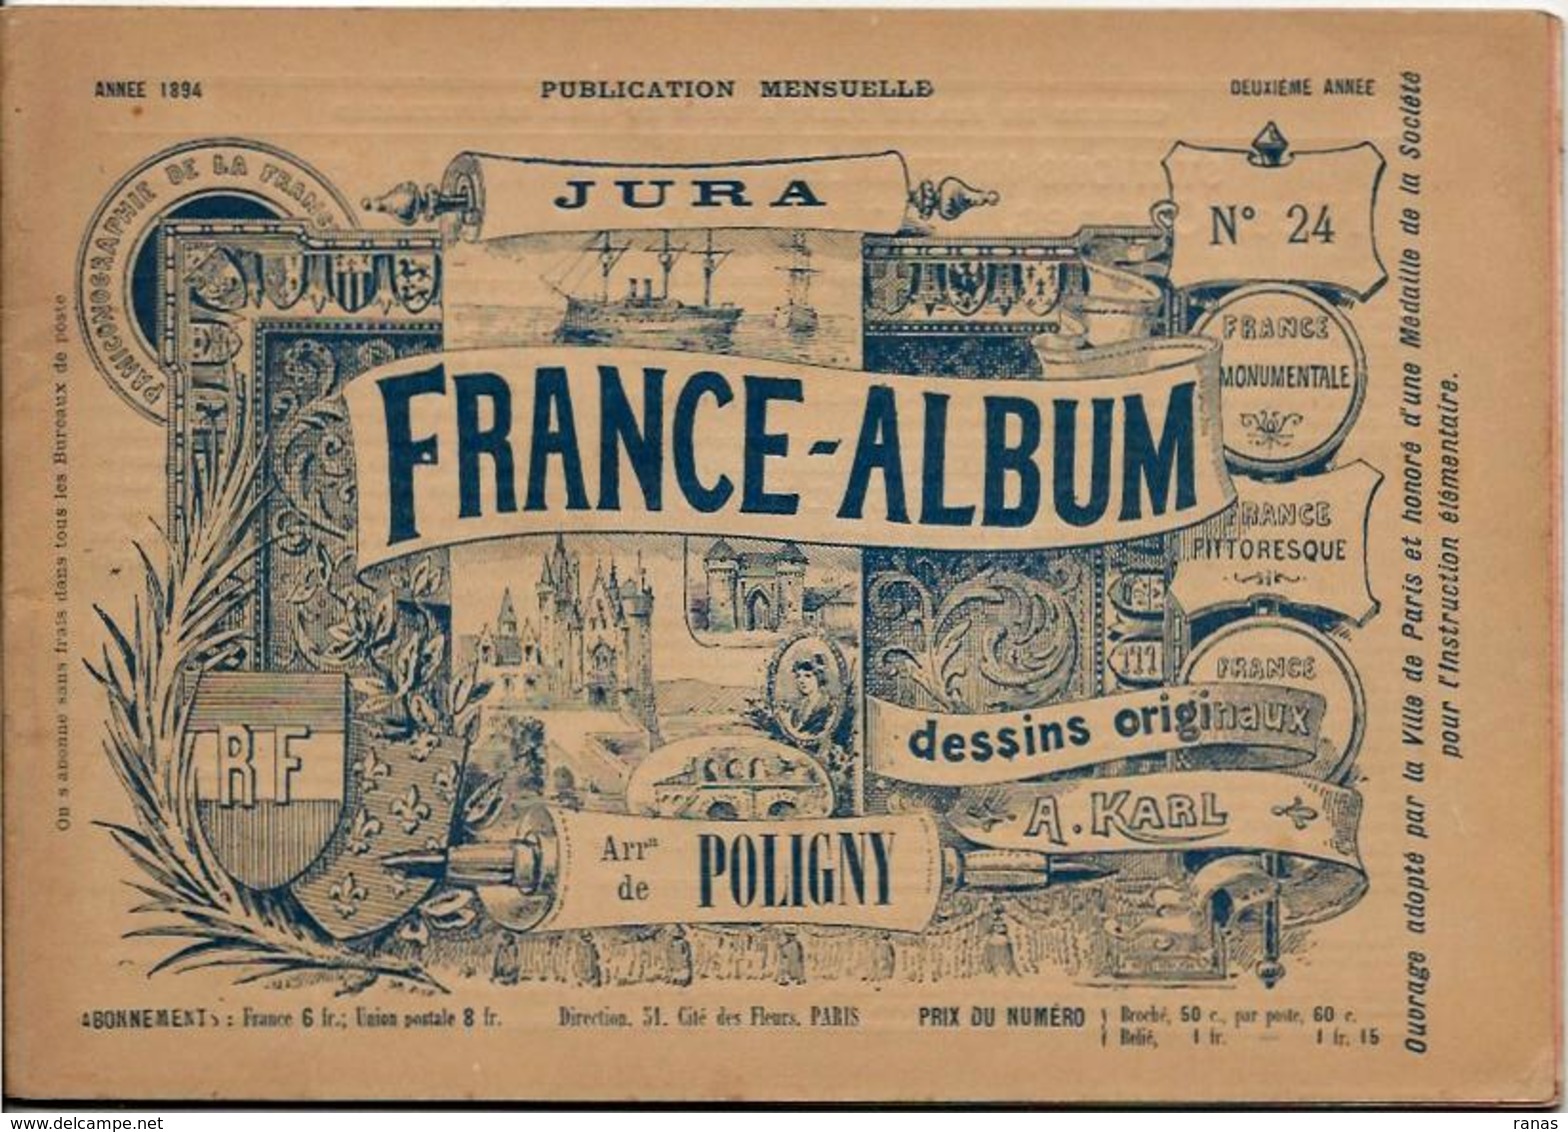 JURA 39 France Album De A. KARL, Carte Gravures Texte Publicités 1894 - Tourism Brochures